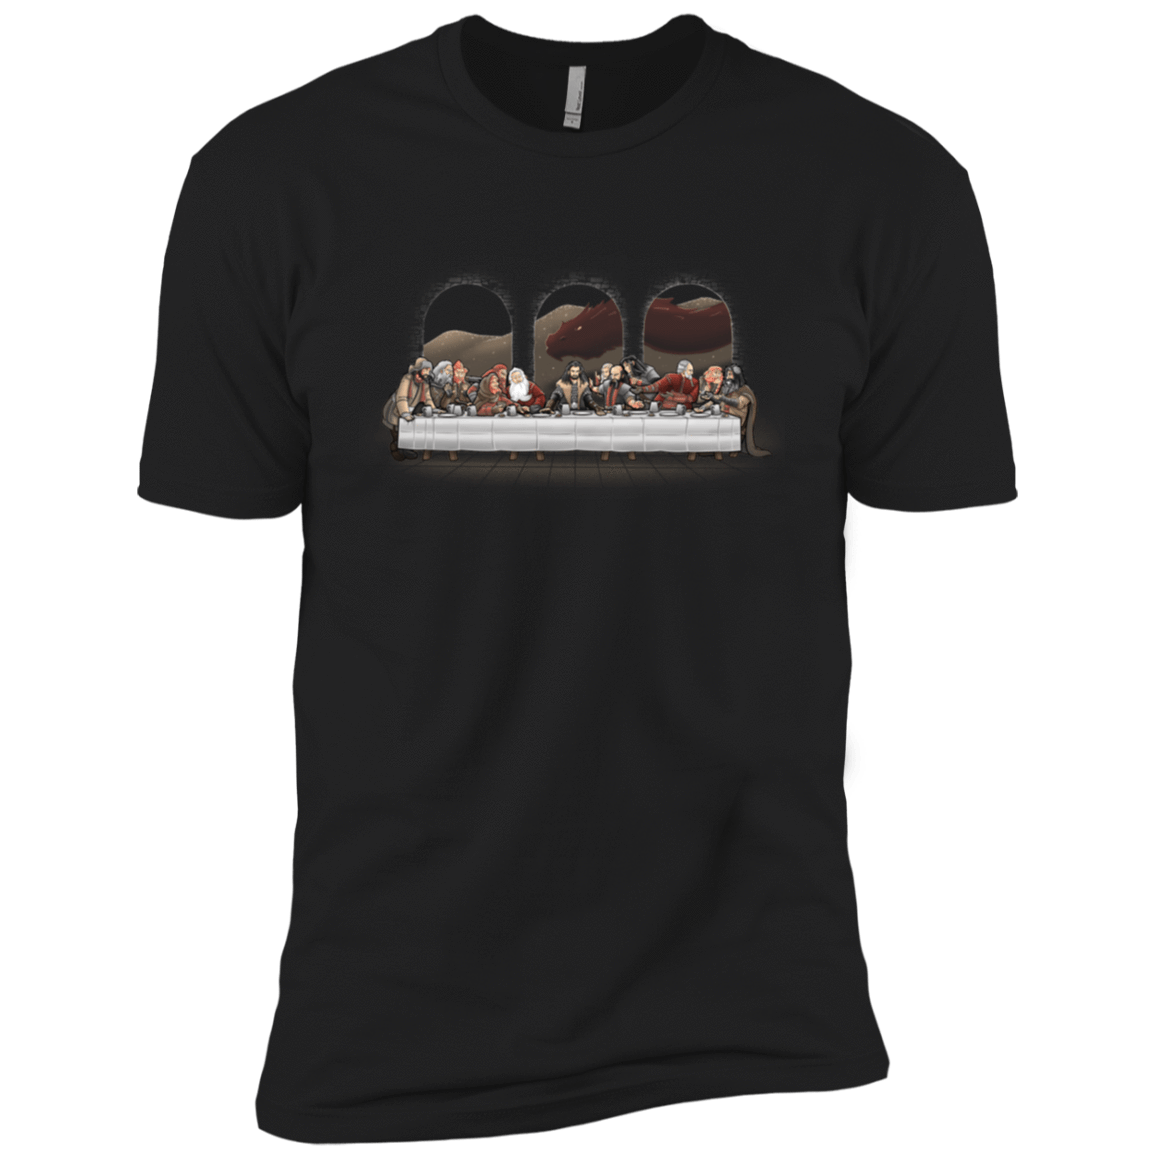 T-Shirts Black / X-Small Dwarf Dinner Men's Premium T-Shirt